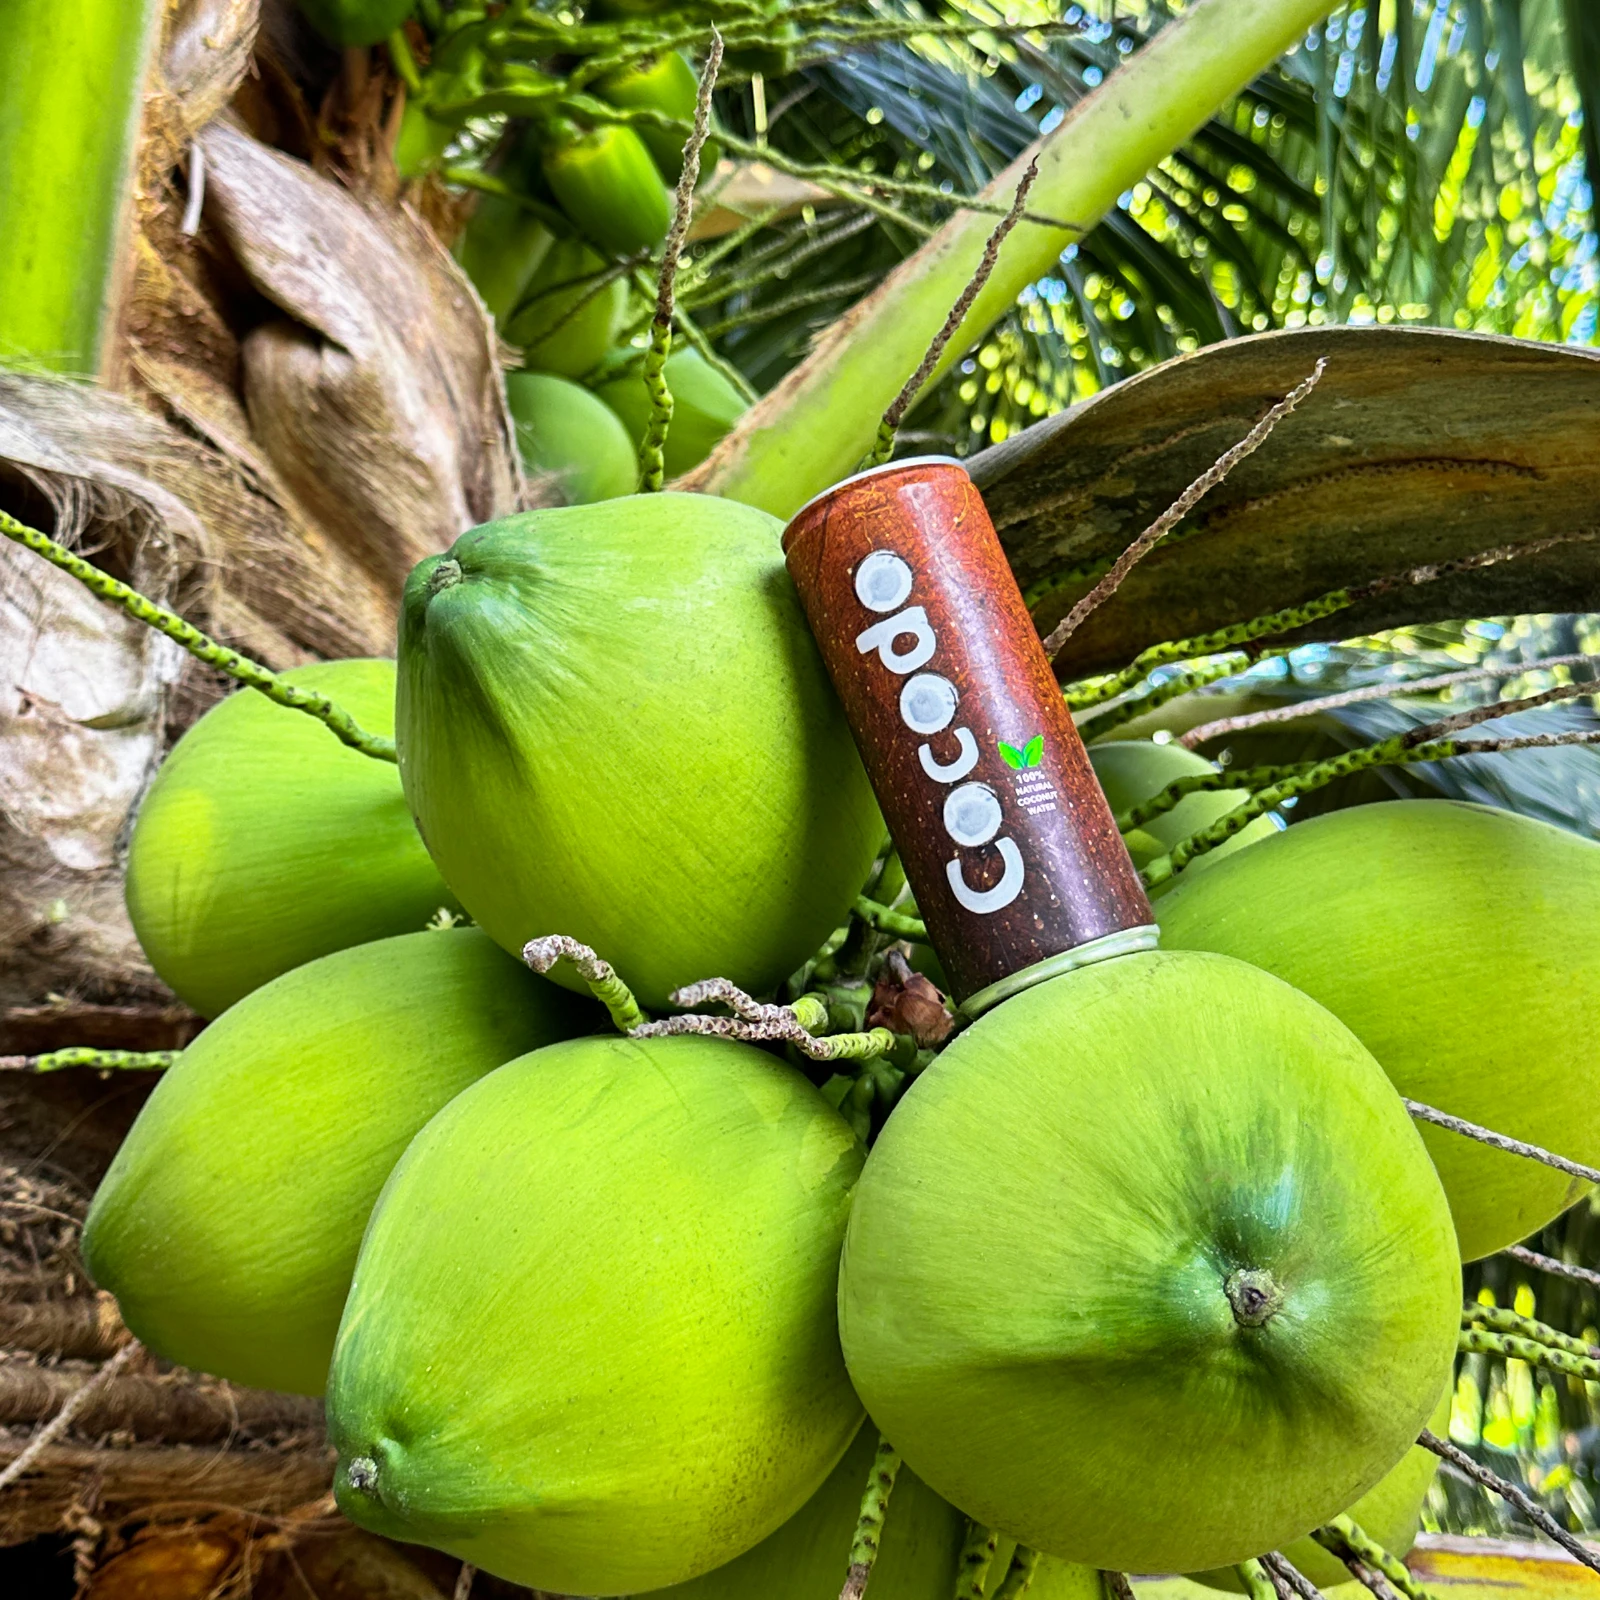 Cocodo - 100% Natürliches Kokosnusswasser | Kalorienarm, Frisch & Zusatzstofffrei 8